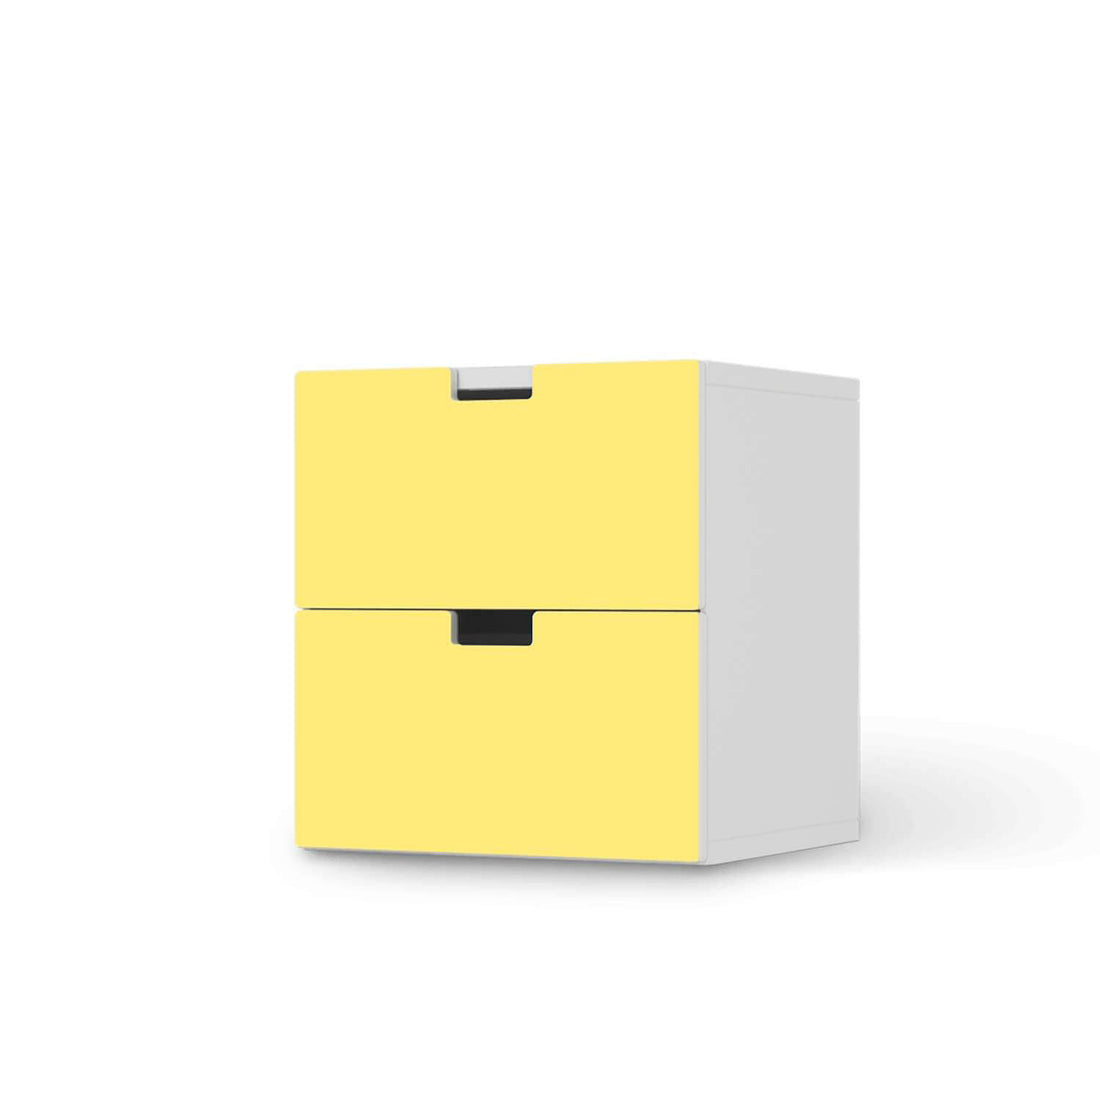 Klebefolie für Möbel Gelb Light - IKEA Stuva Kommode - 2 Schubladen  - weiss